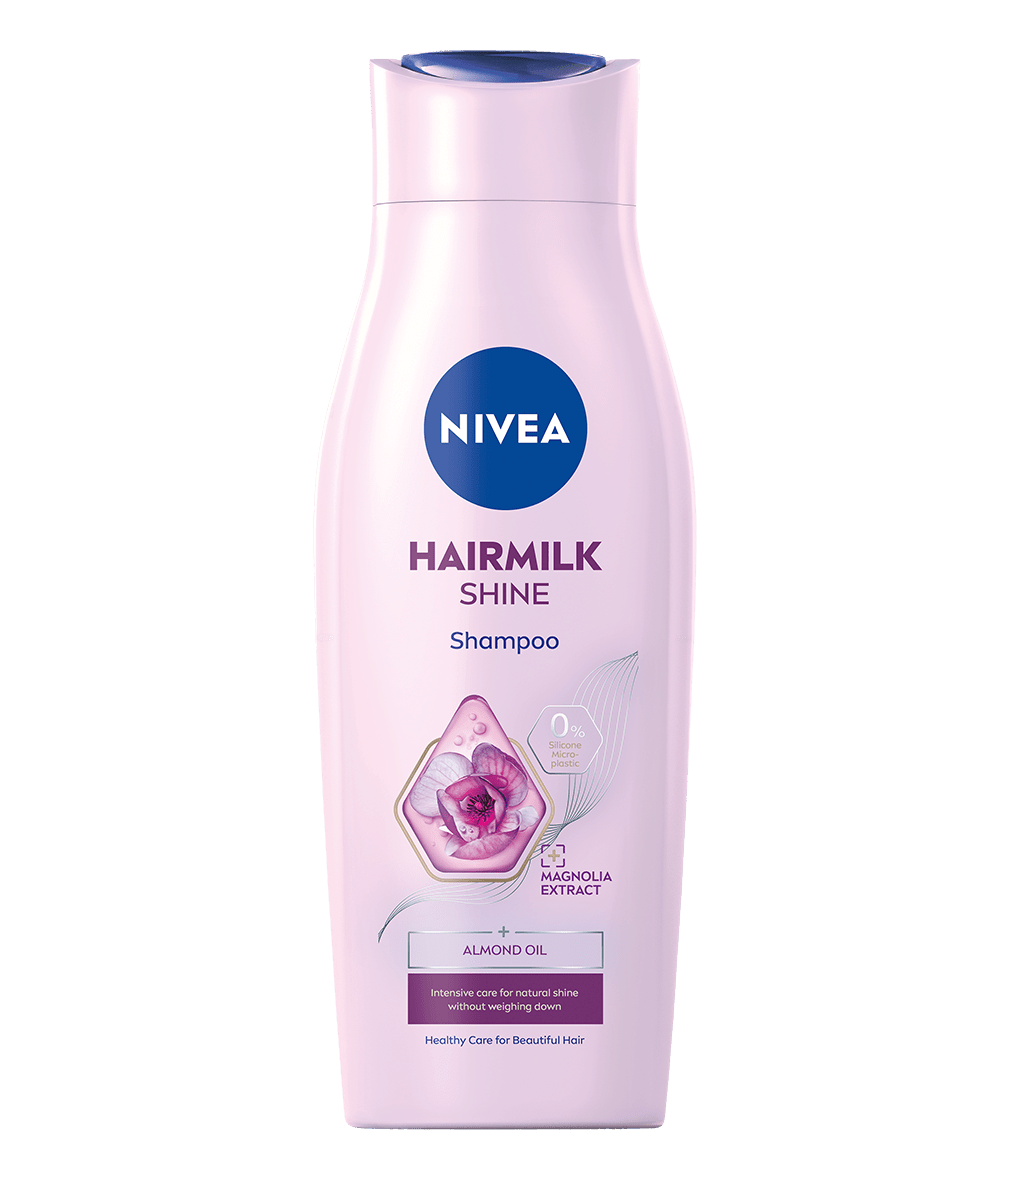 szampon do włosów milk nivea